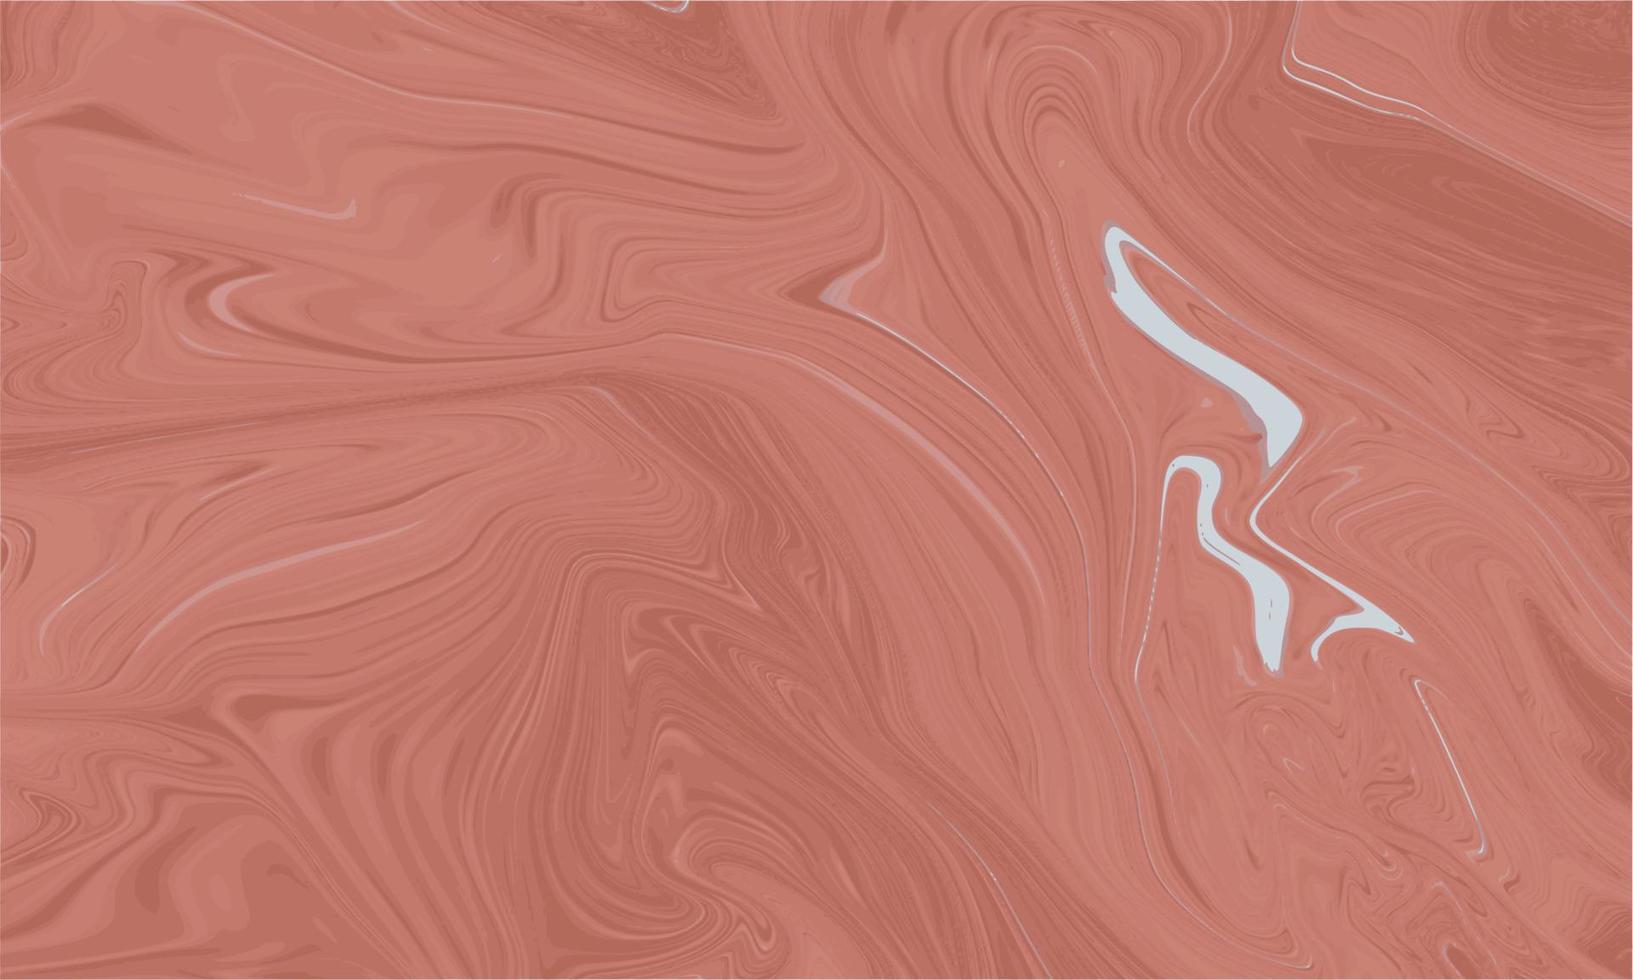 abstrakt rosa flytande marmor bakgrund vektor